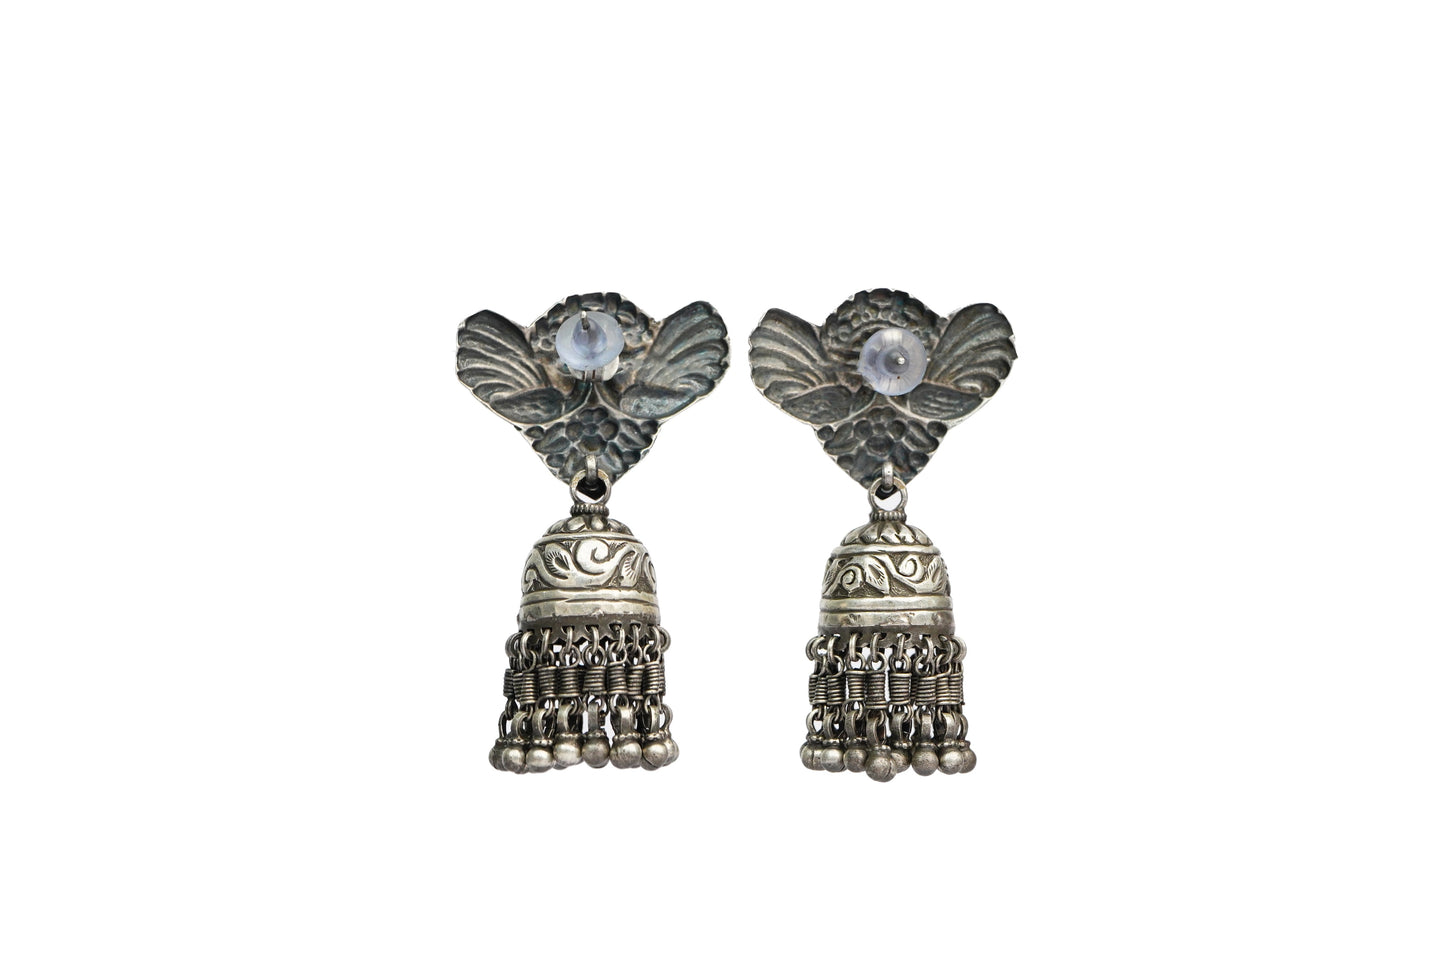 Tribal Twin Peackcok Silver Earrings with Jhumki - Neeta Boochra Jewellery